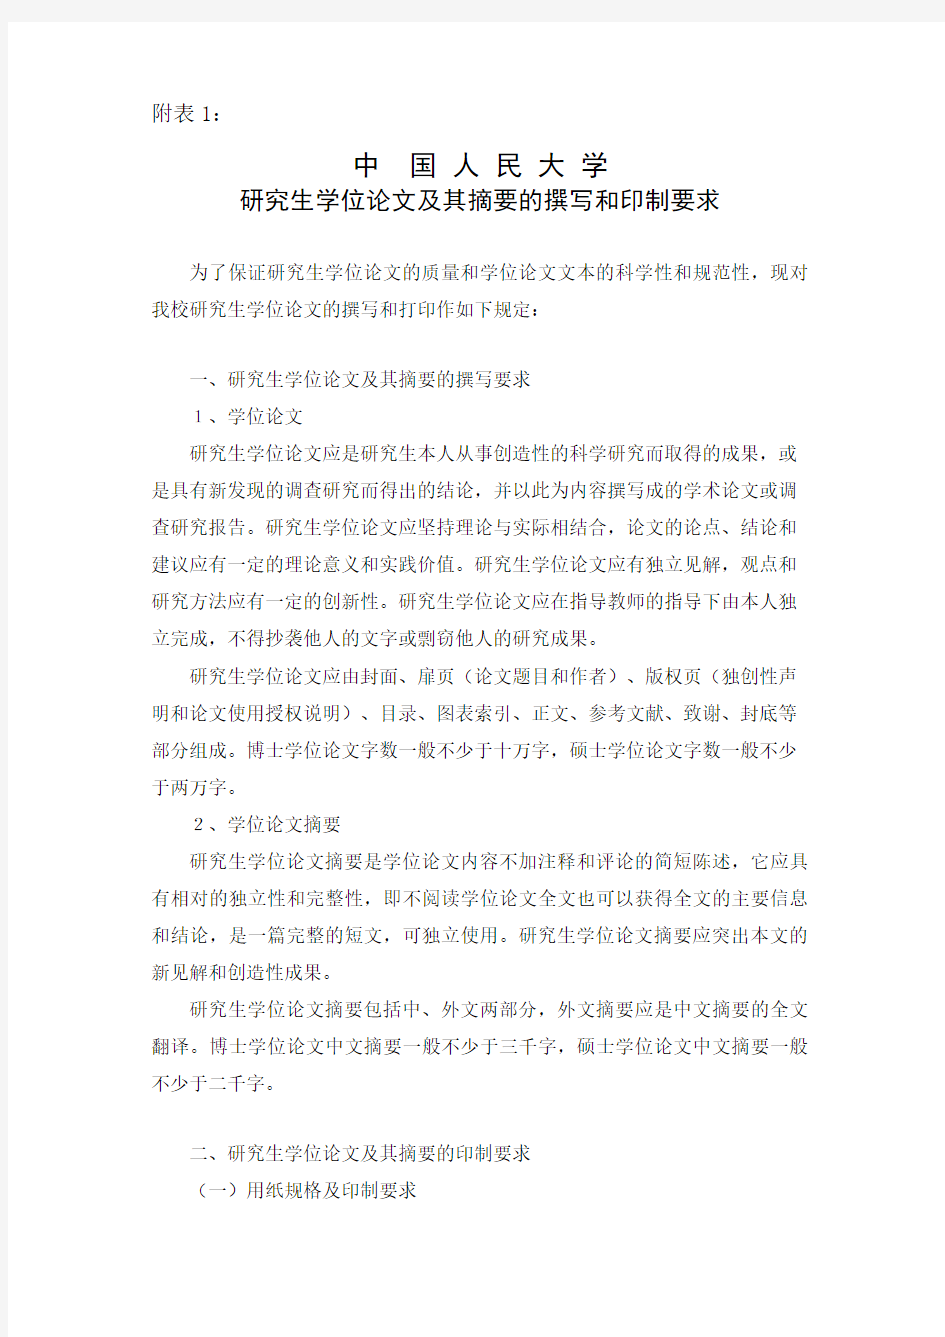 中国人民大学研究生学位论文及其摘要的撰写和印制要求